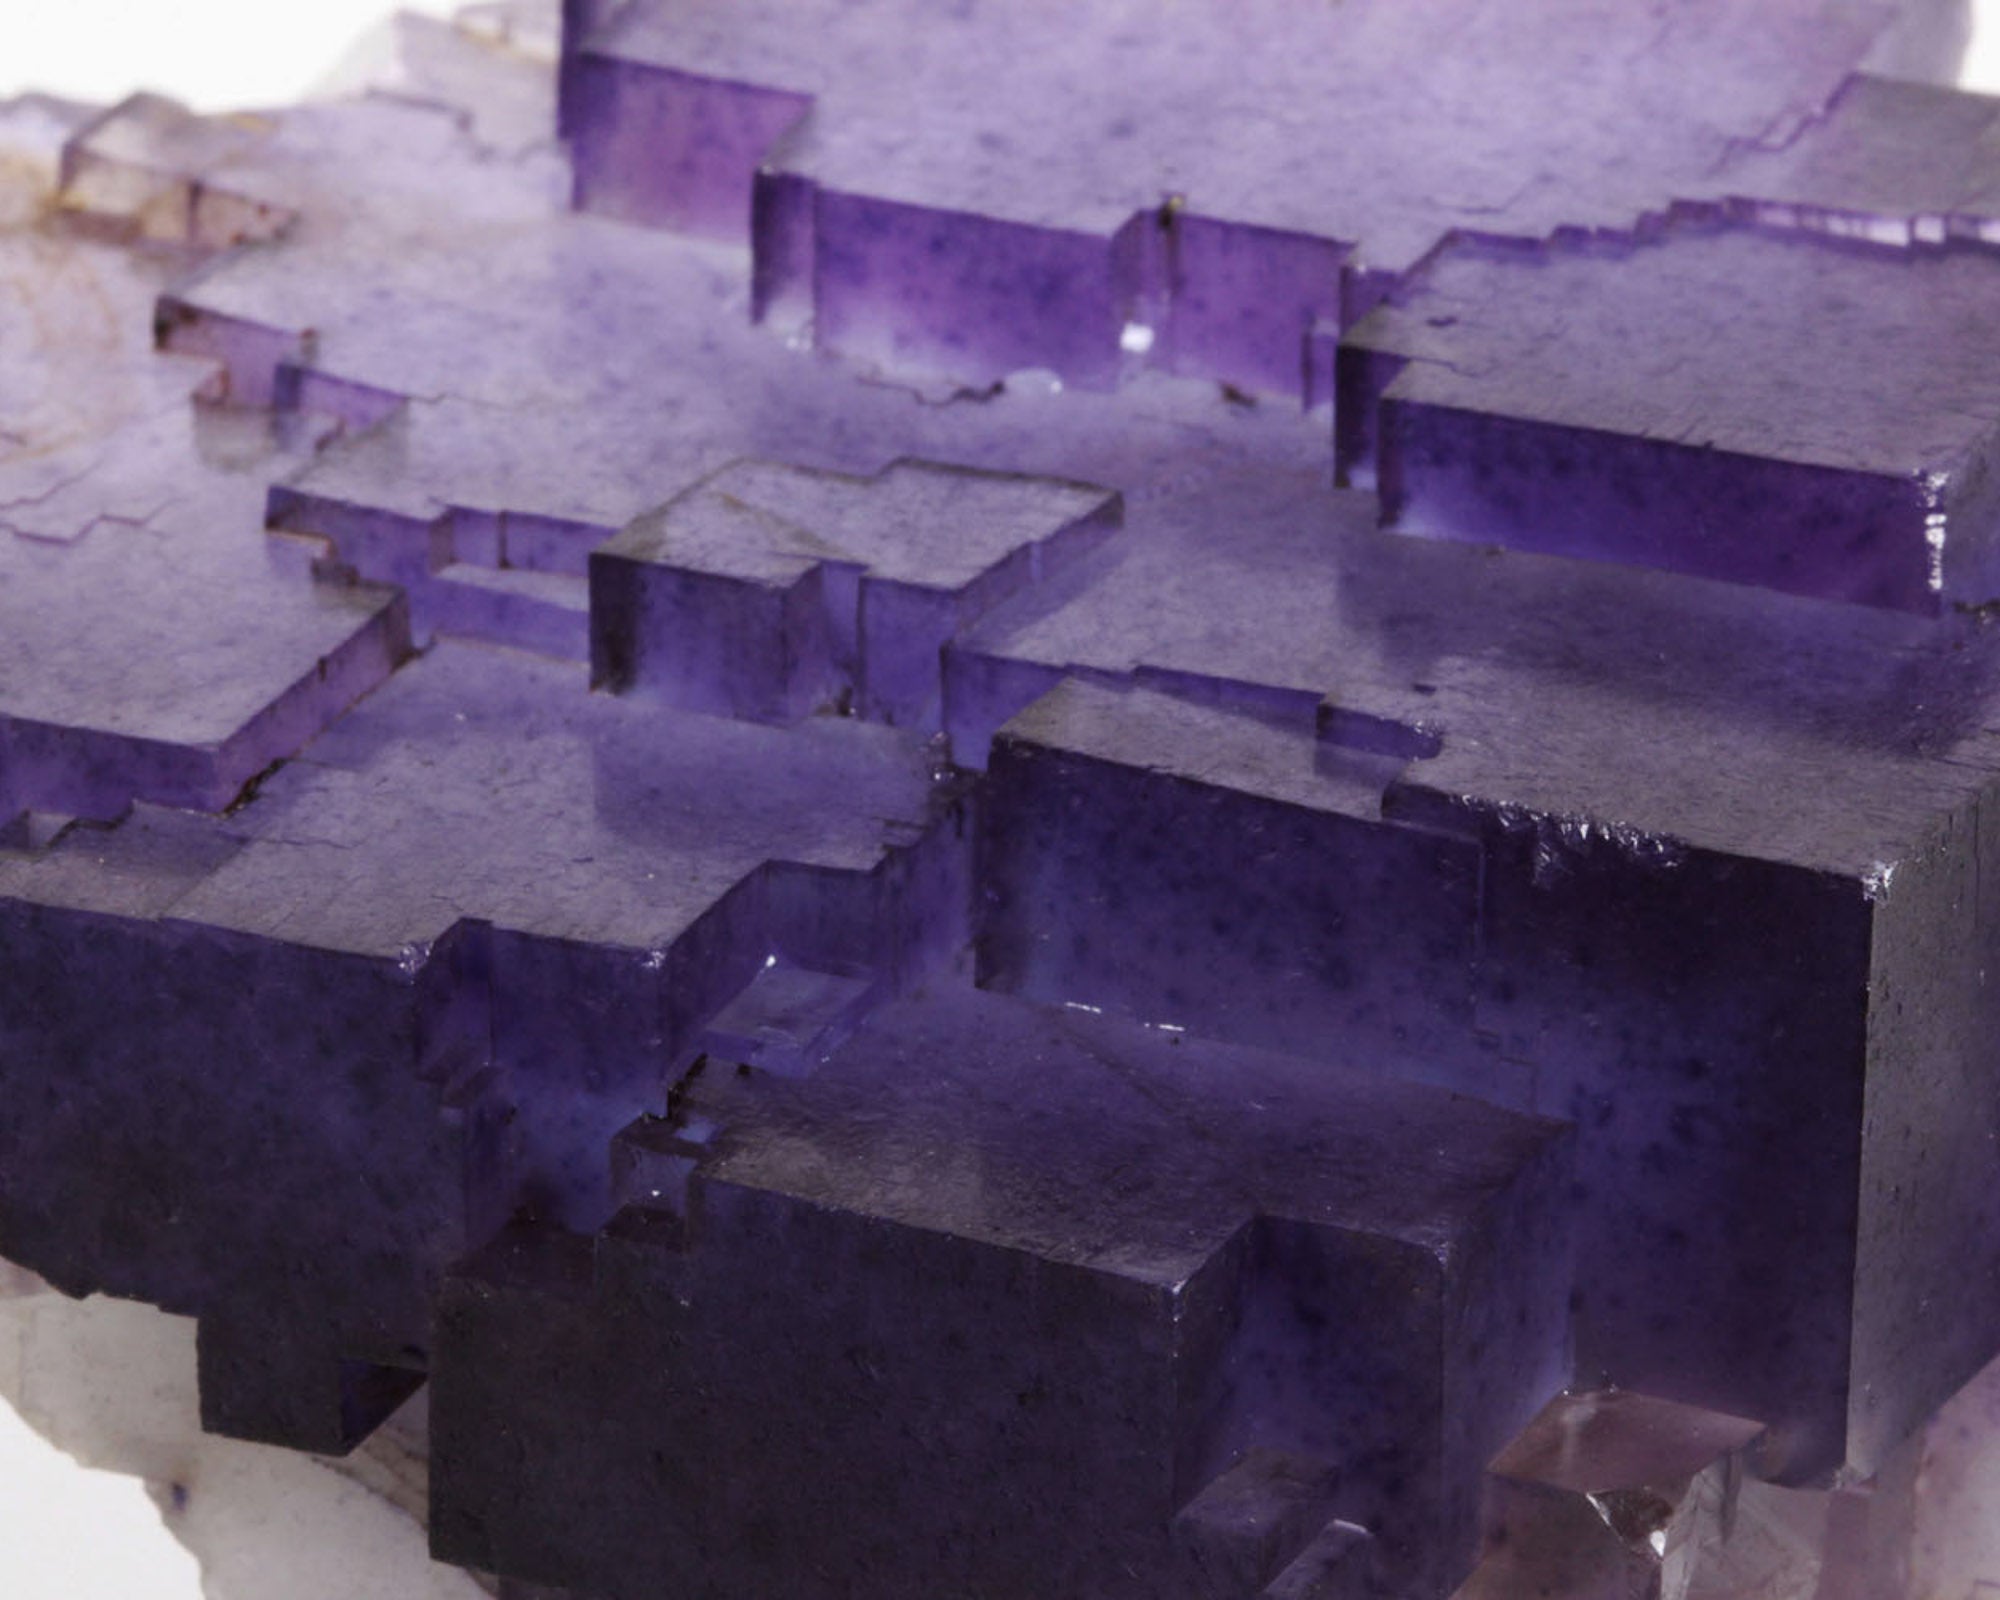 Fluorite, Purple